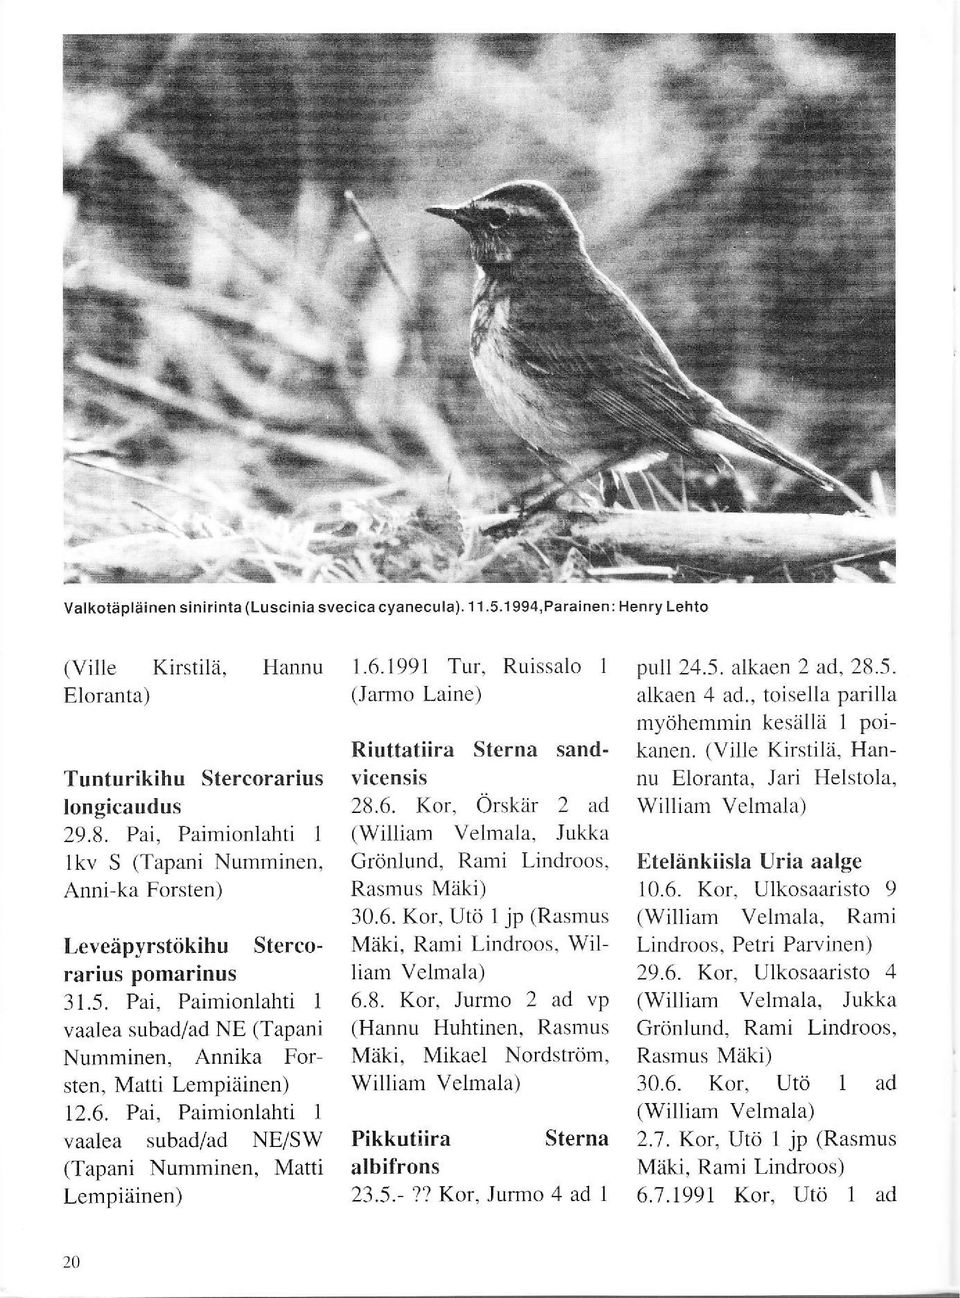 Pai, Paimionlahti 1 vaalea subad/ad NE/SW (Tapani Numminen, Matti Lempiäinen) I.6. 1991 Tur. Ruissalo 1 (Janno Laine) Riuttatiira Sterna sandvicensis 28.6. Kor.